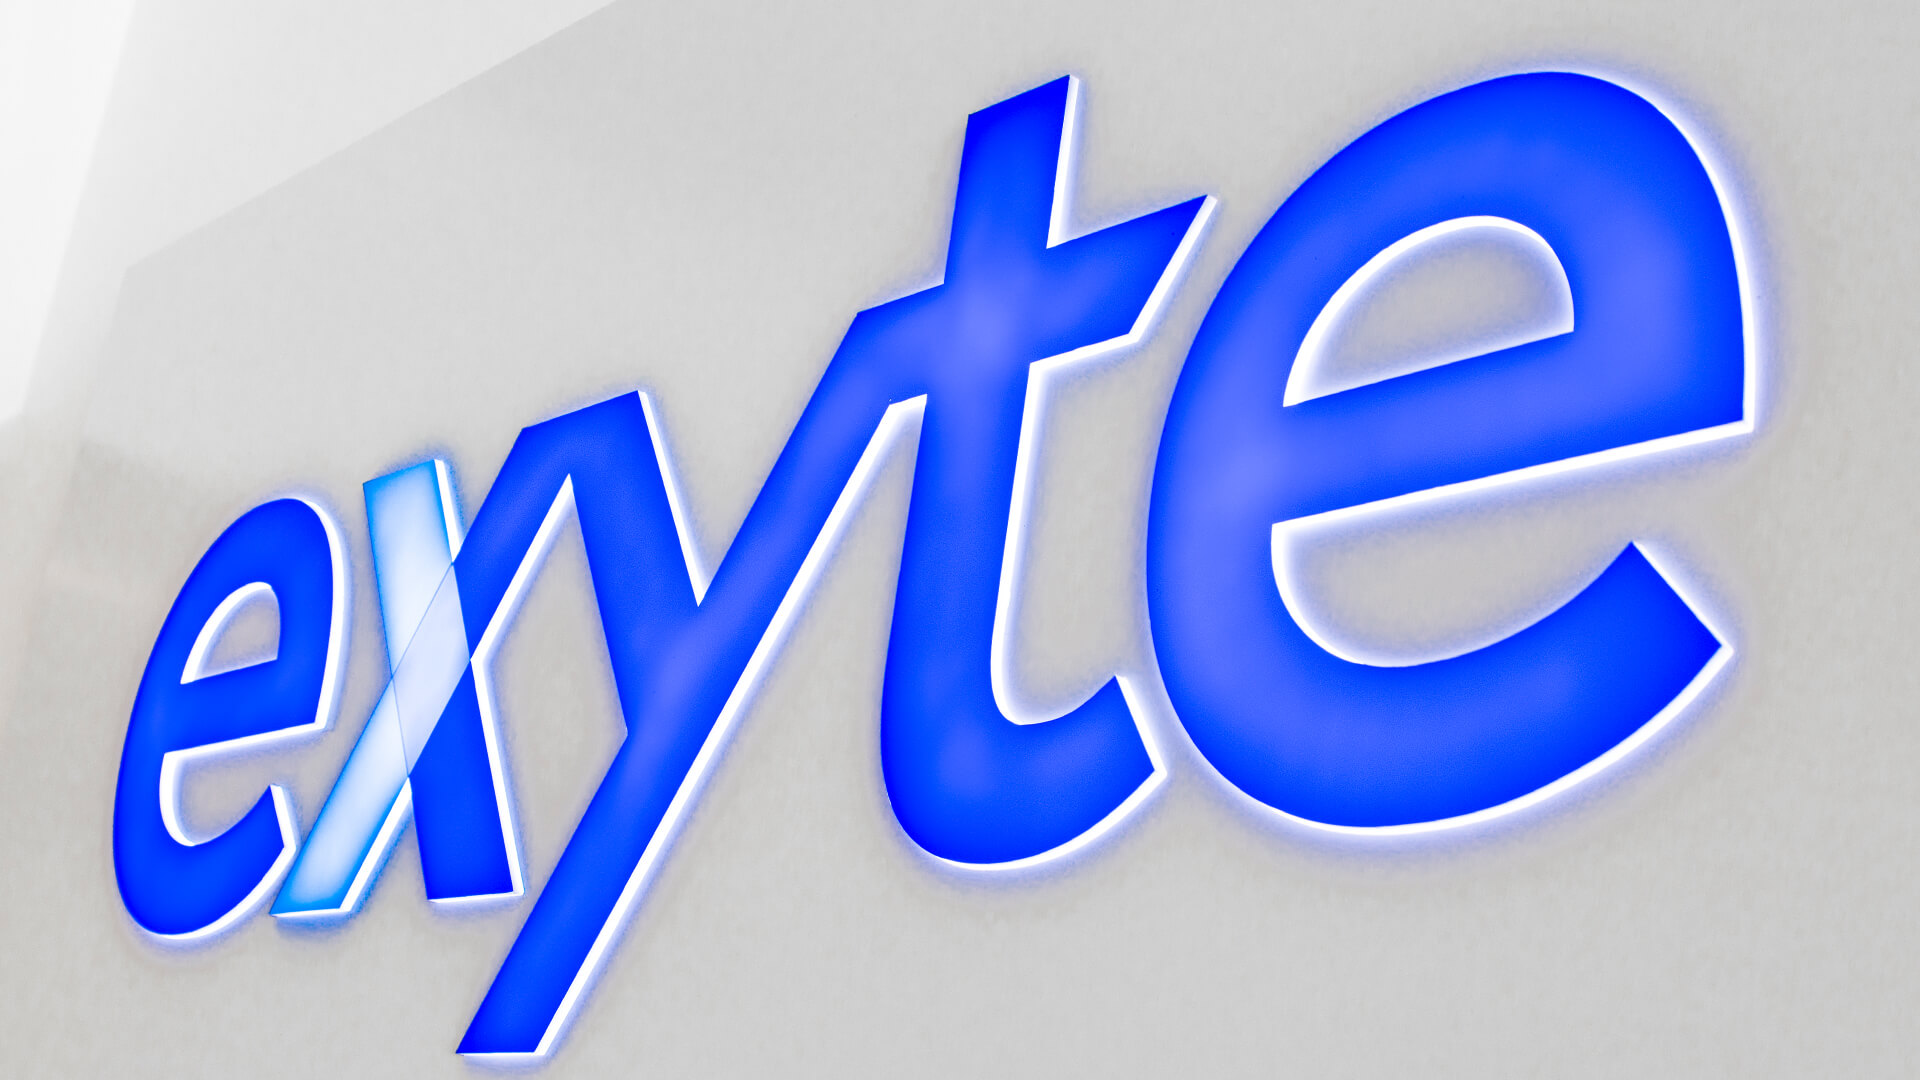 uscita exyte - exyte-cashboard-sulla-parete-interno-dell'ufficio-dietro-la-reception-logo-back-lit-cashboard-per-ordine-gdansk-parco-tecnologico-scientifico